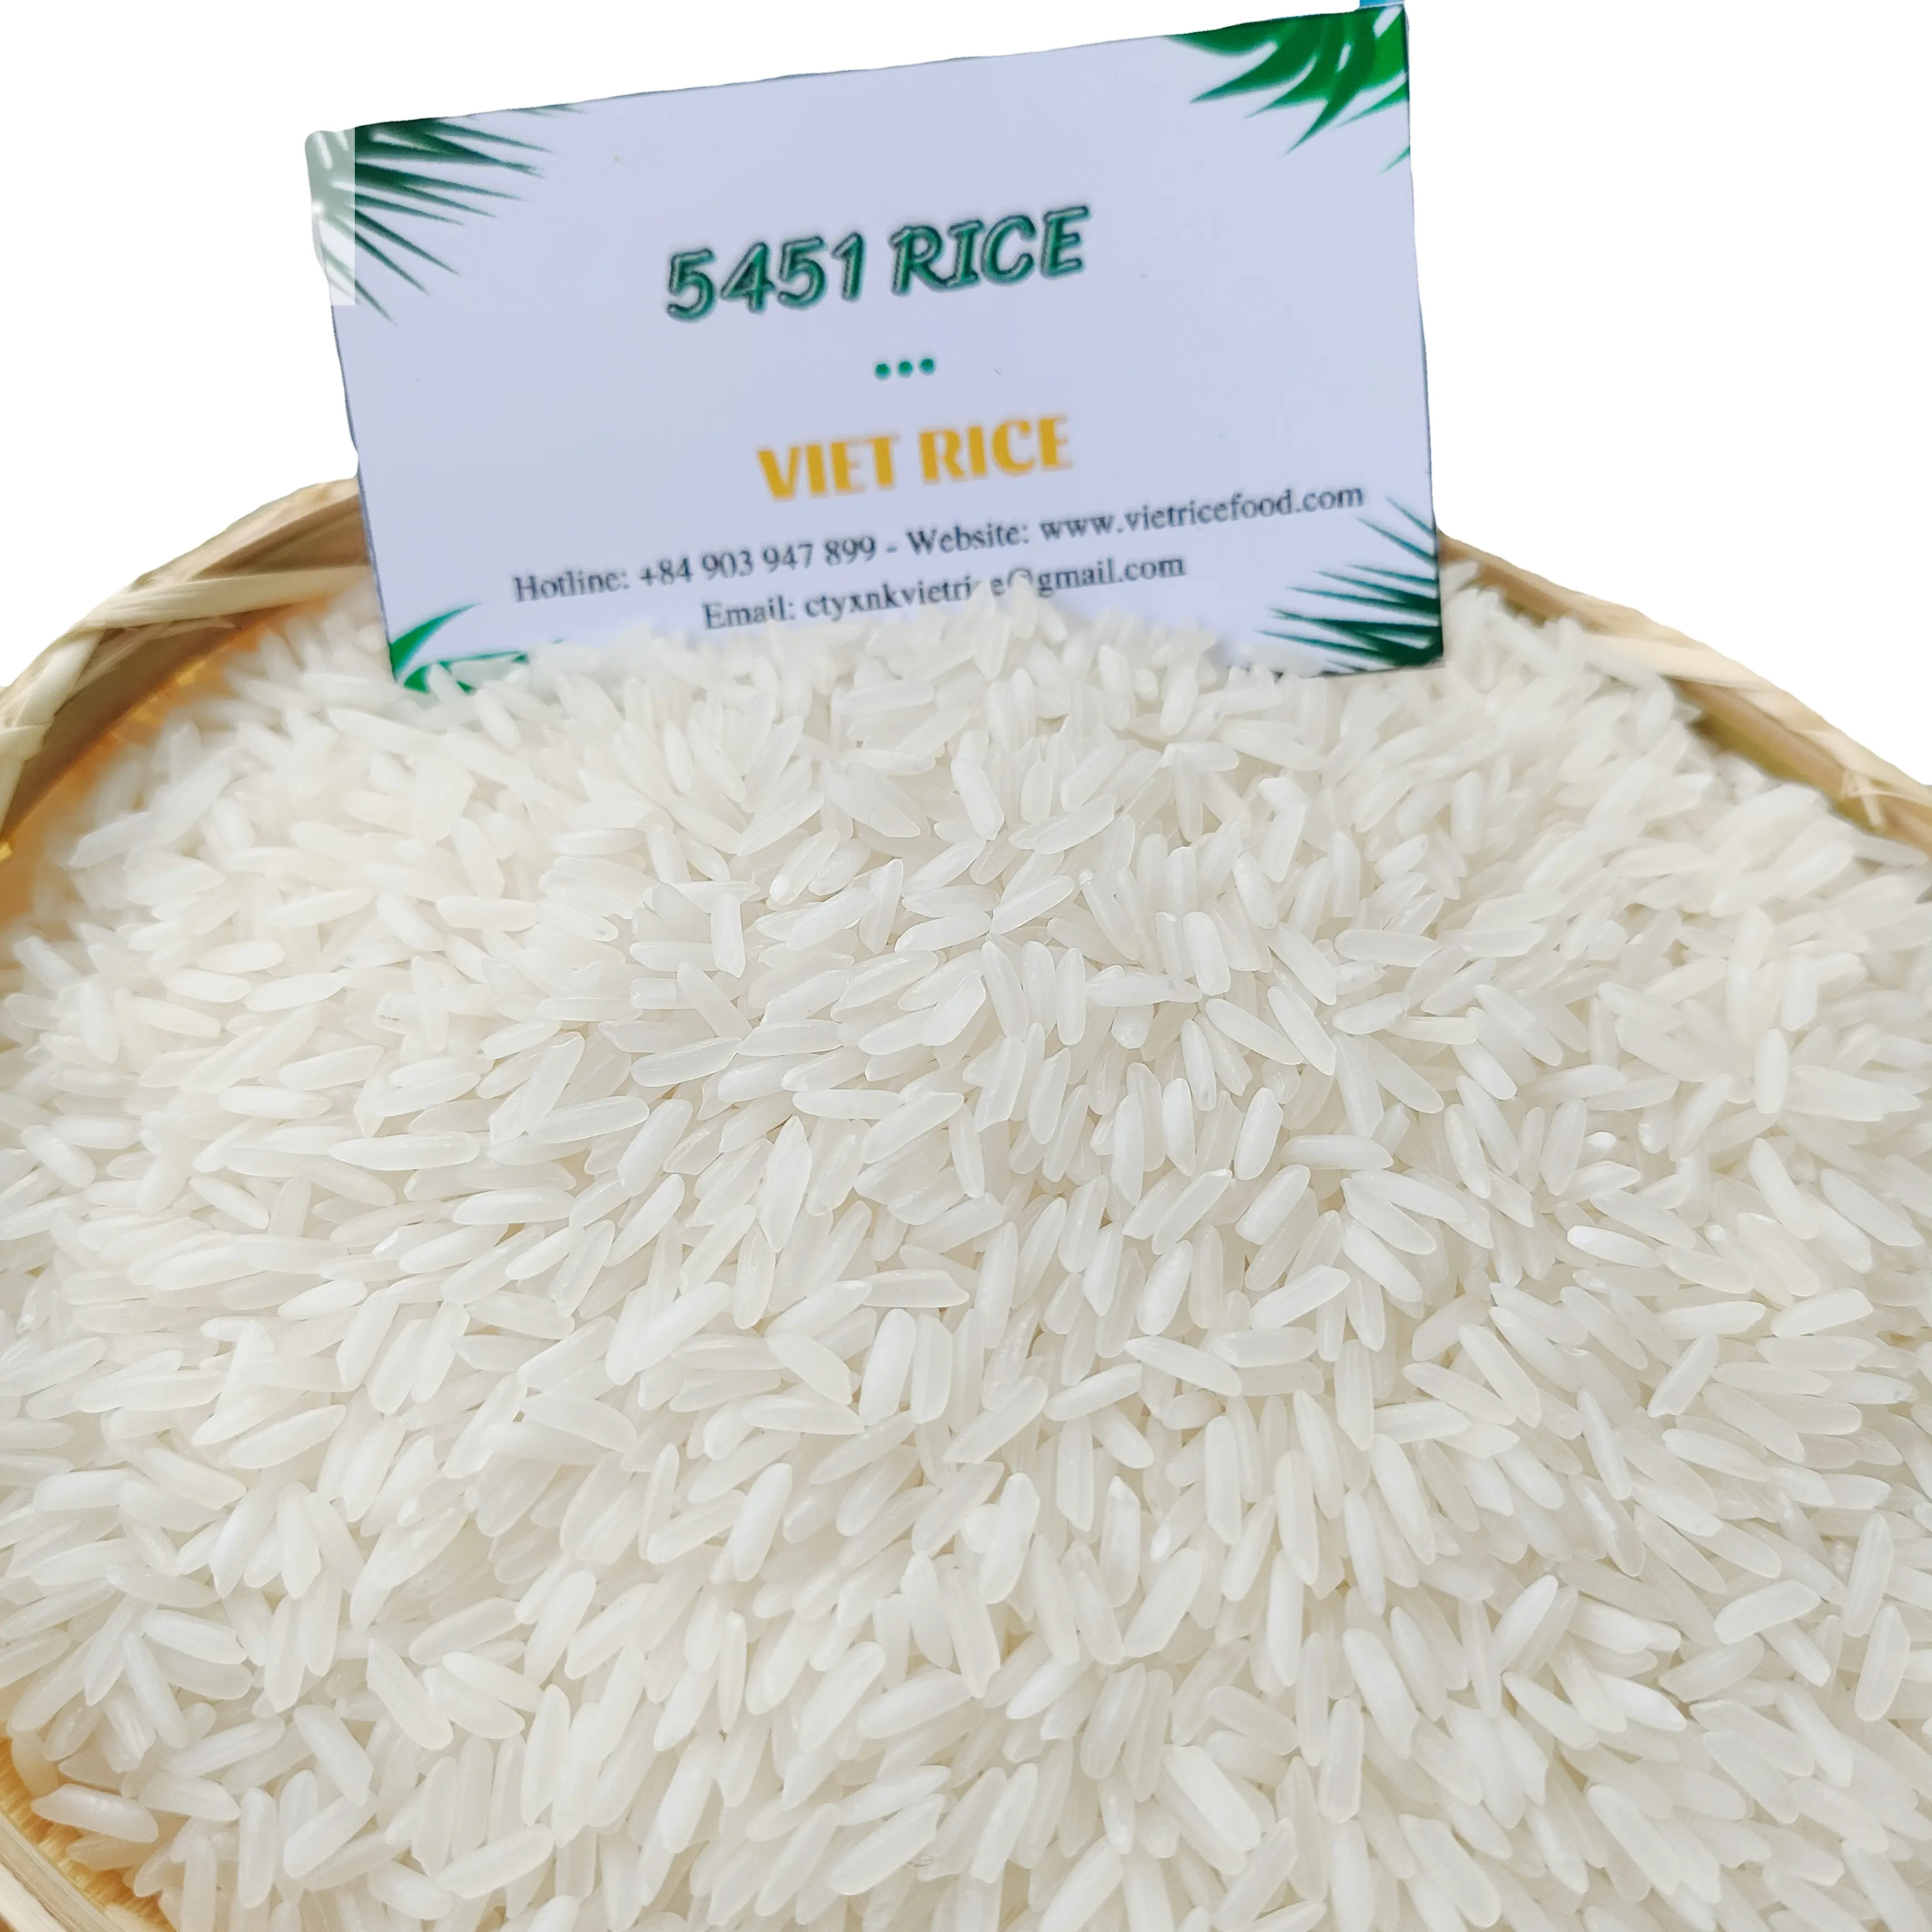 Лучшее качество, хорошая цена, длиннозерный белый рис OM5451, рис для экспорта, бренд, производитель из Вьетнама, Лидер продаж, жасминовый рис